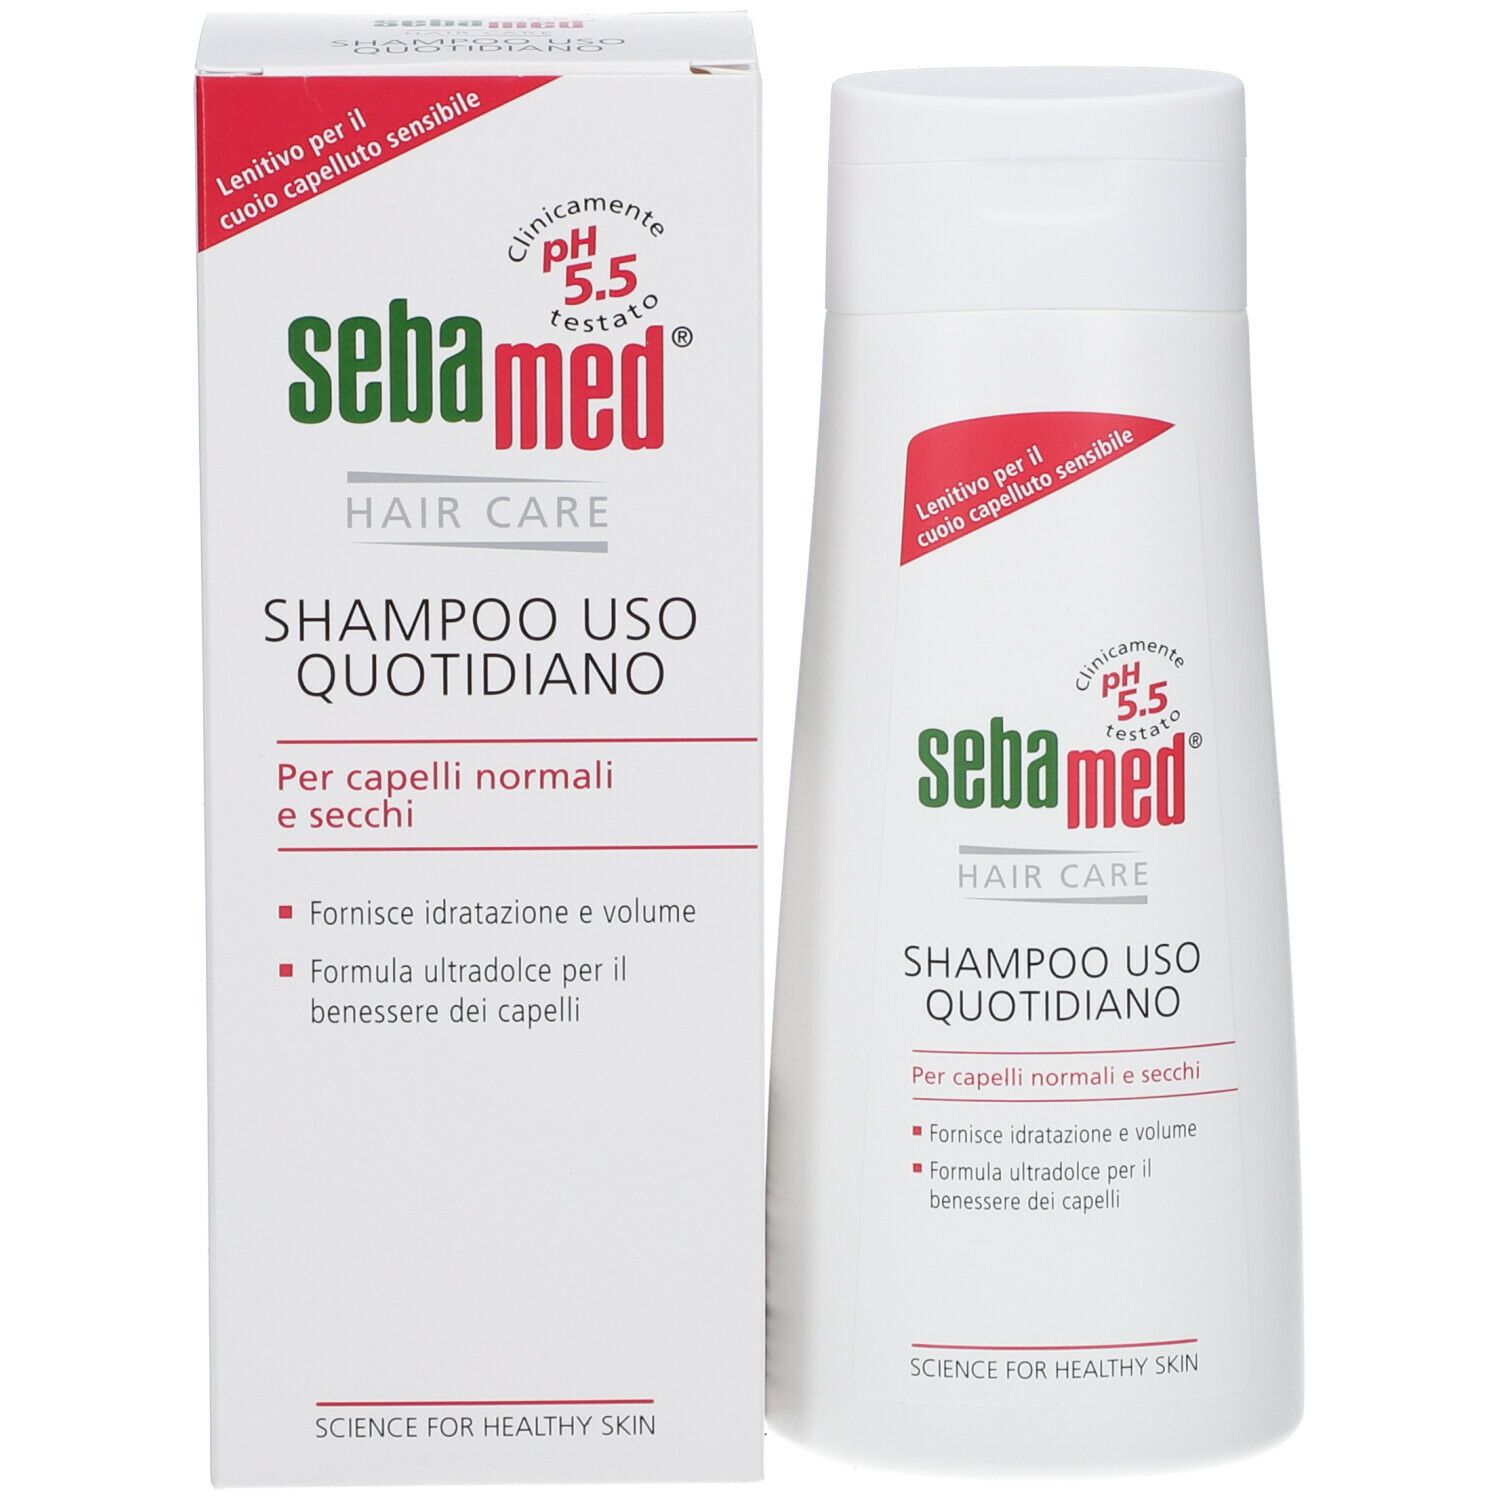 Sebamed® Everyday Shampoo